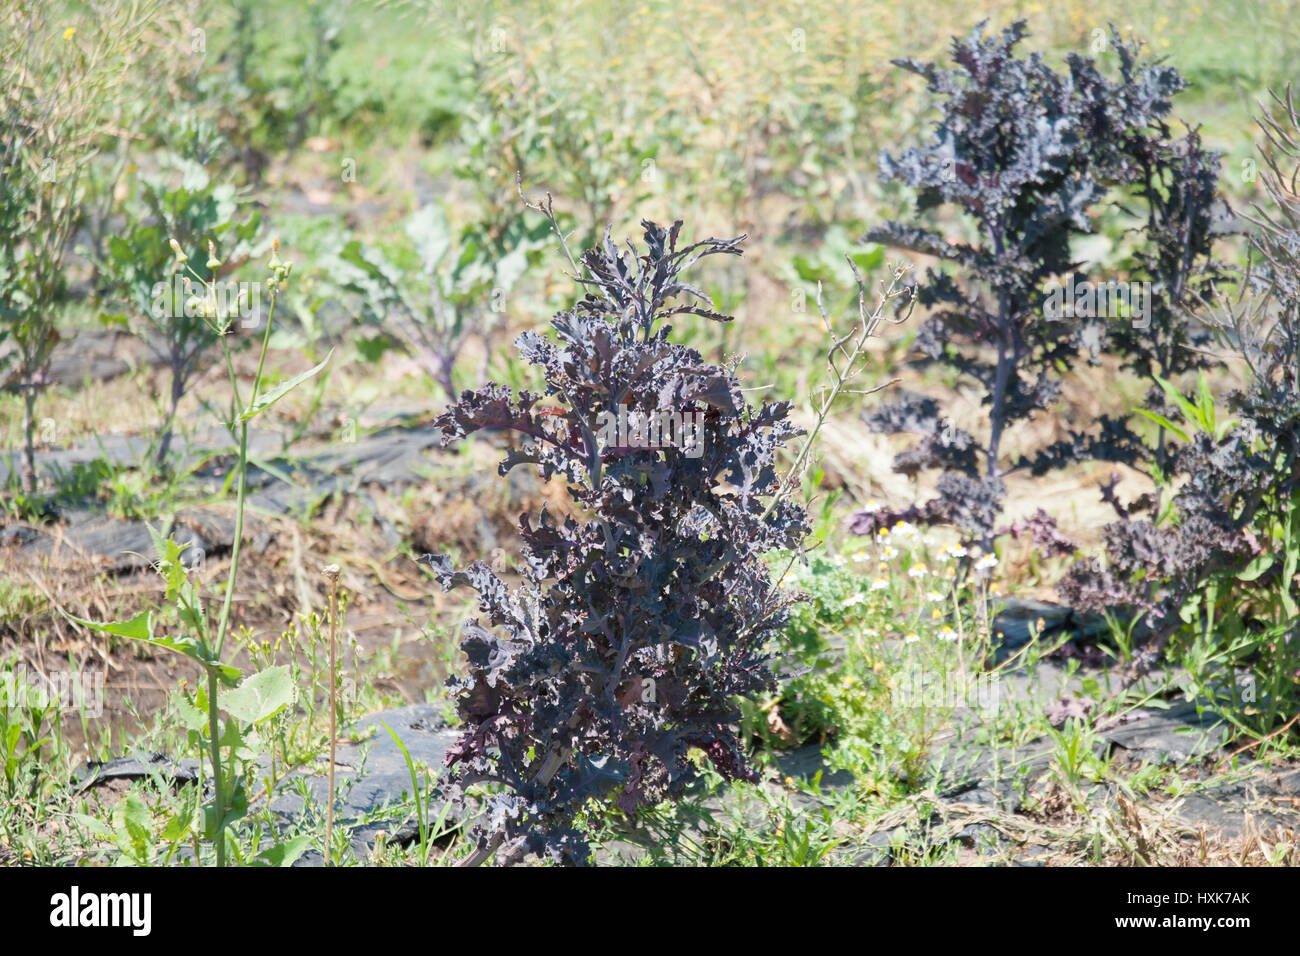 Purple kale growing in field Stock Photo